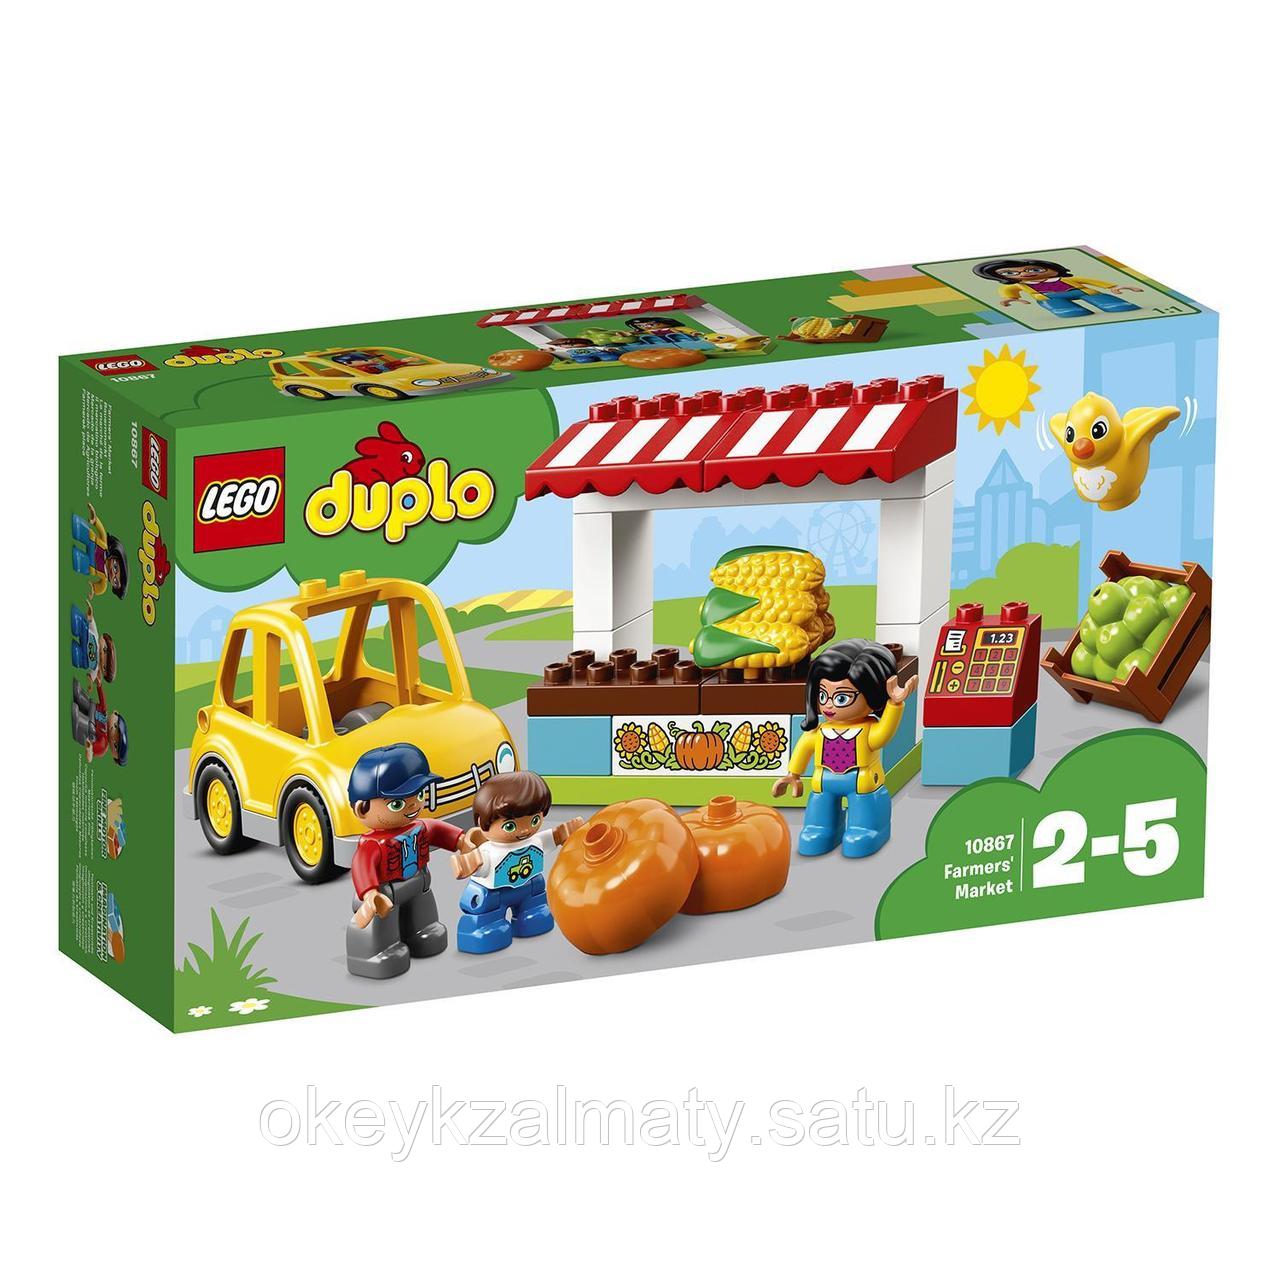 LEGO Duplo: Фермерский рынок 10867